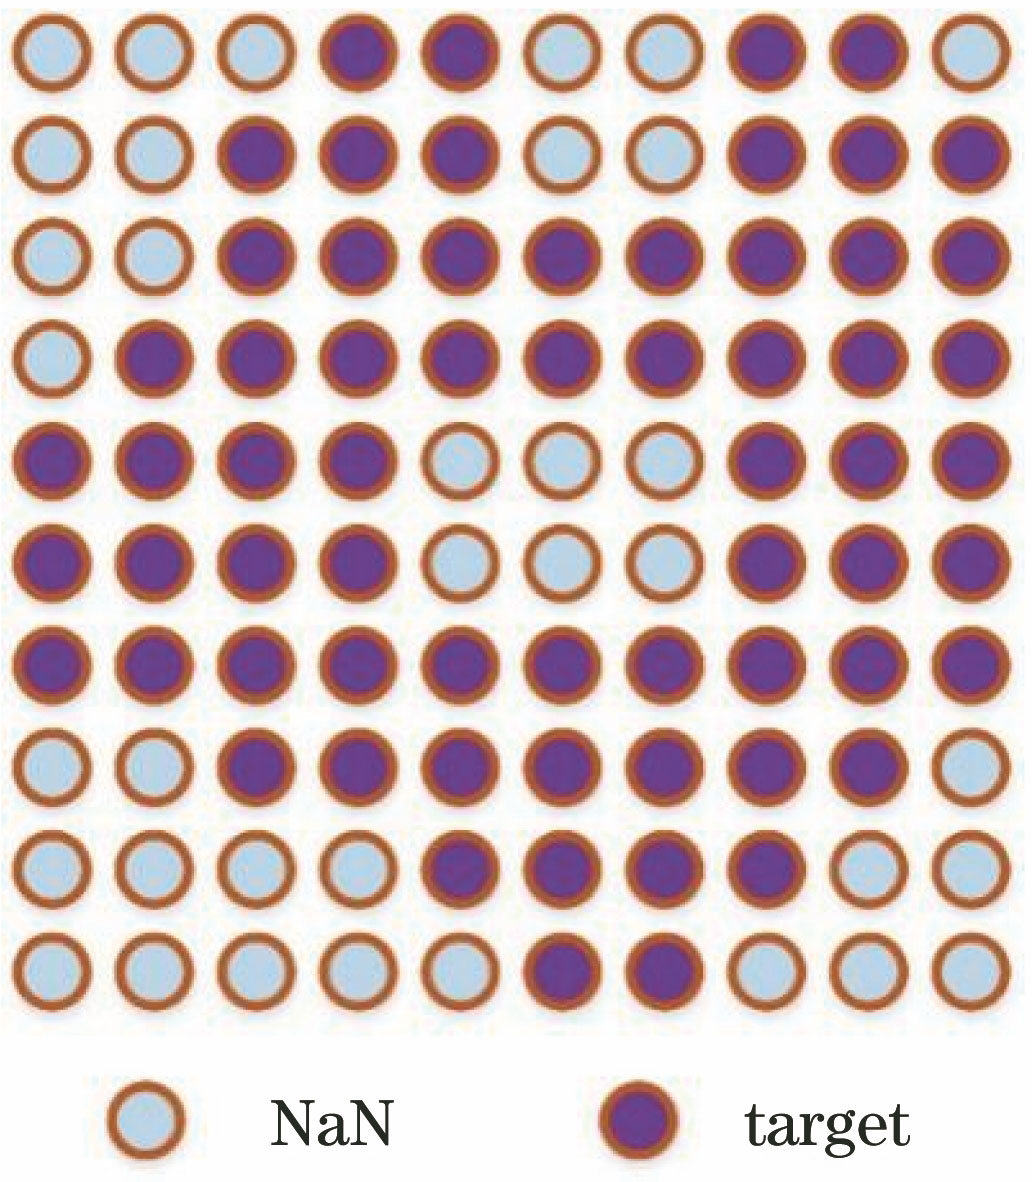 Schematic of filling non-matrix data